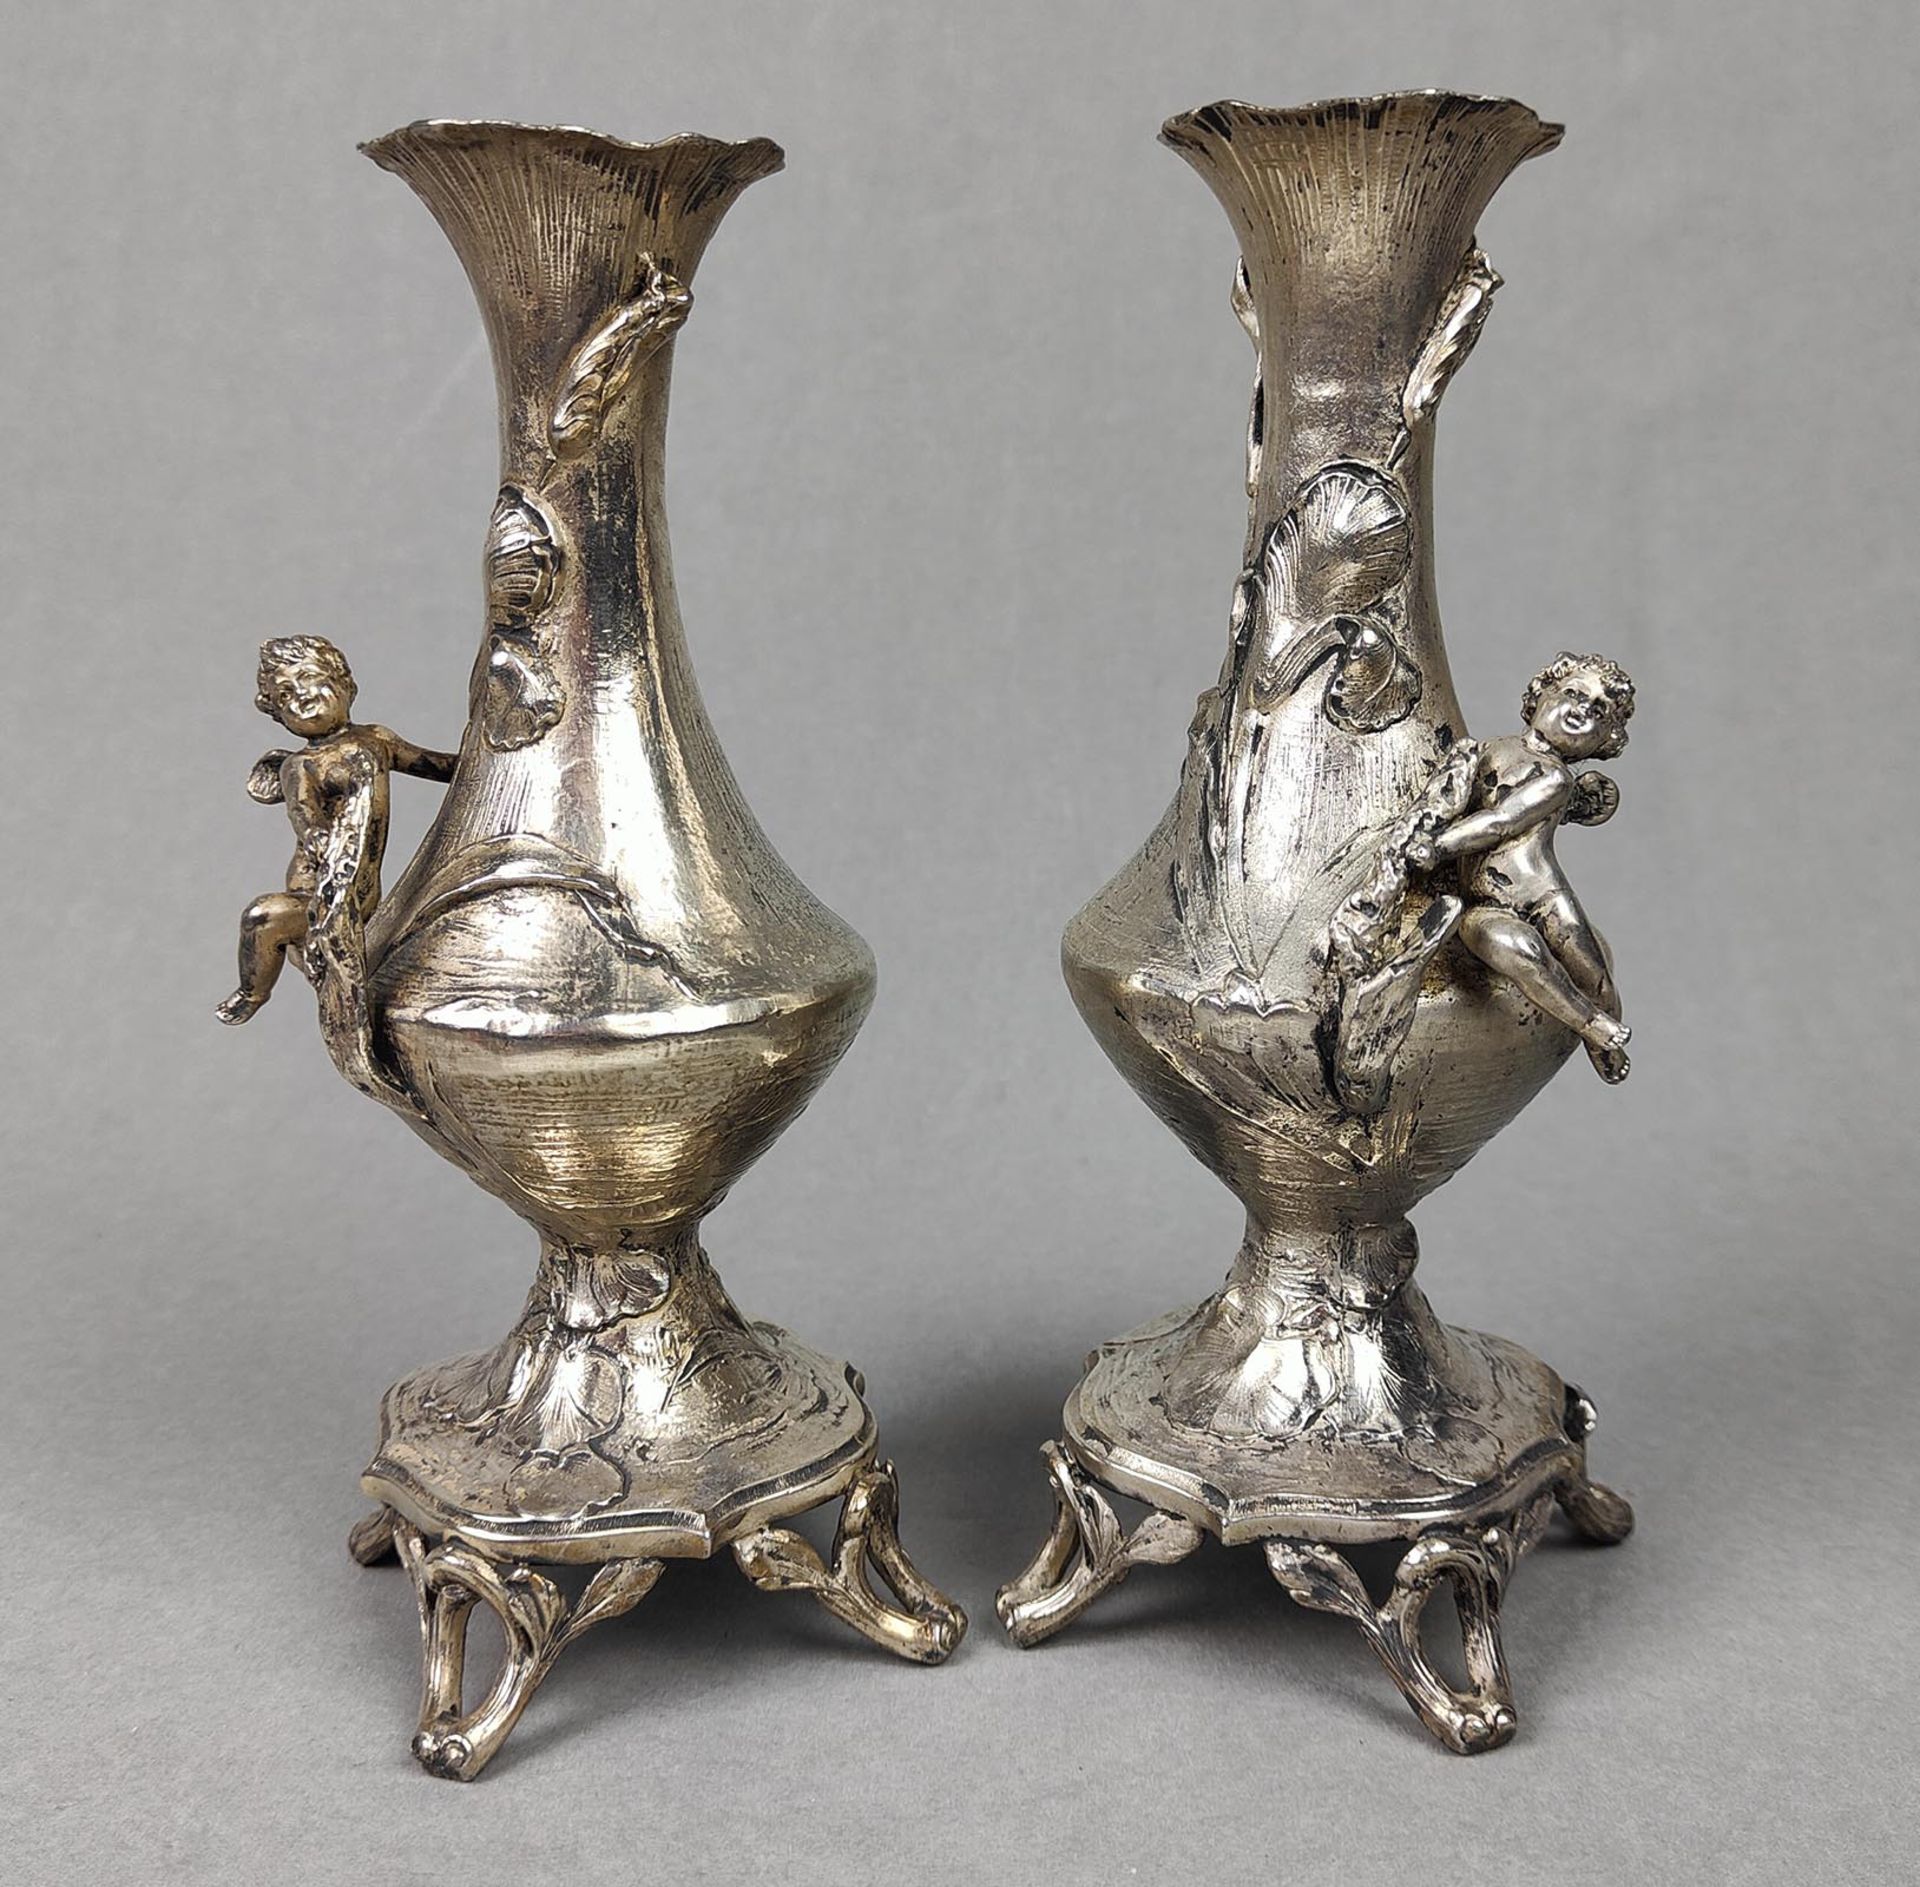 Jugendstil Vasenpaar mit Putto - Image 2 of 4